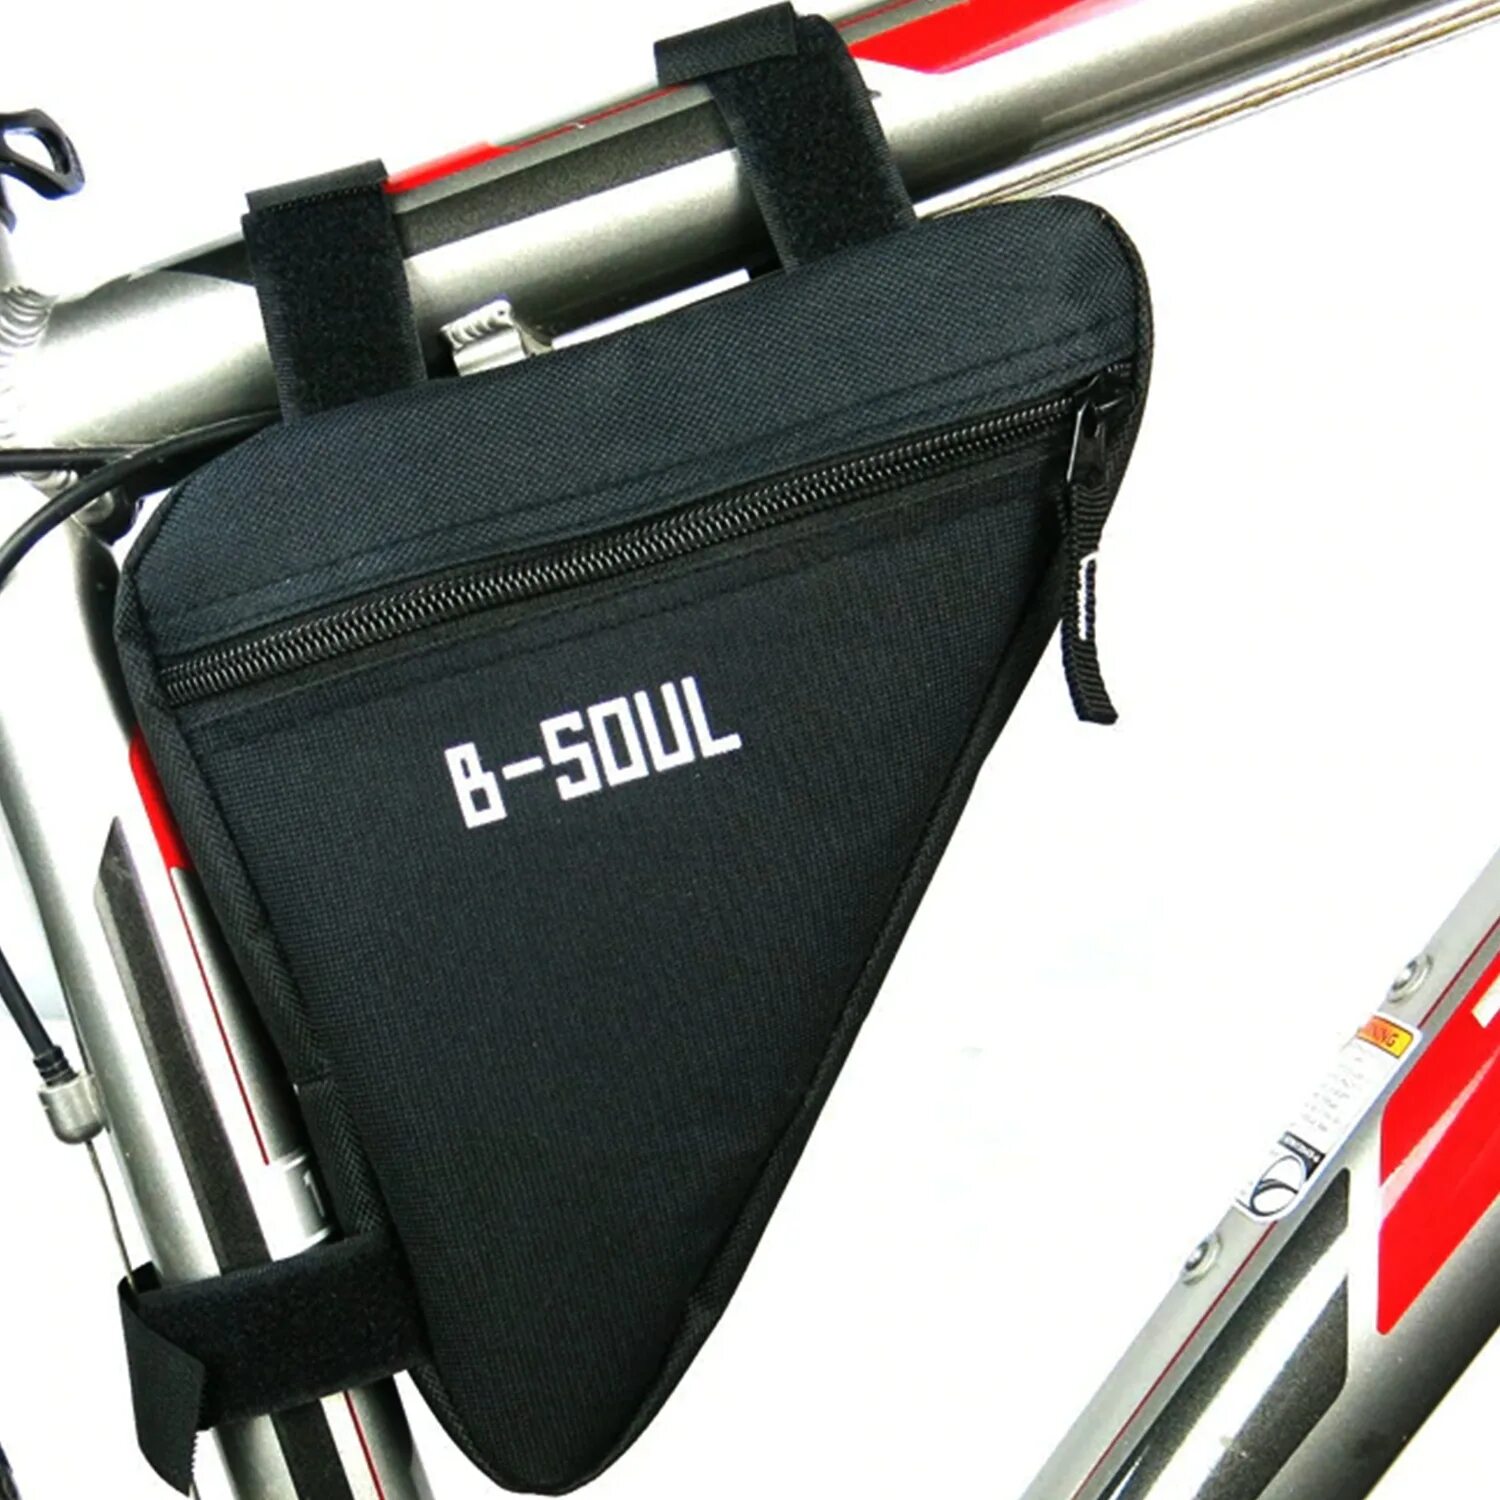 Bike bag. B-Soul велосумка велосипедная сумка на раму. Велосумка стелс на раму. B-Soul велосумка на багажник. Forward Sporting сумка под раму.